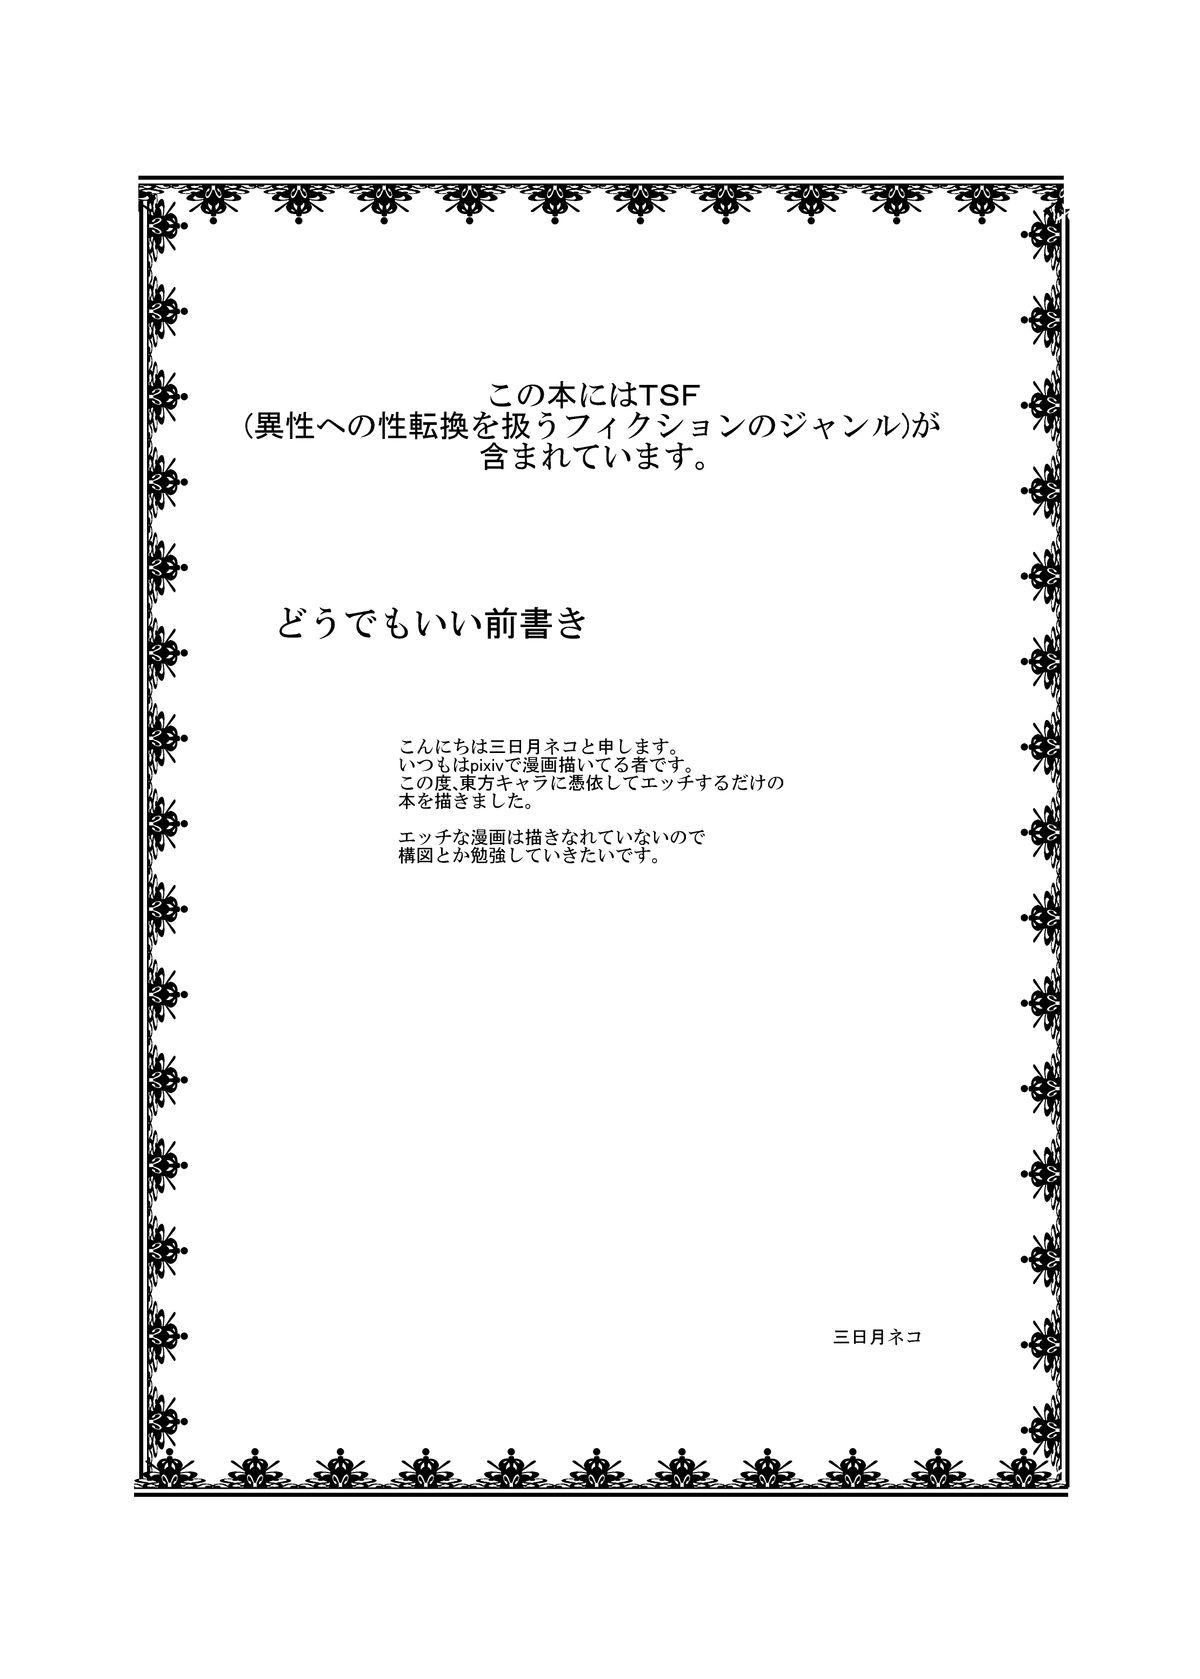 Gostoso Touhou TS Monogatari - Touhou project Vip - Page 2